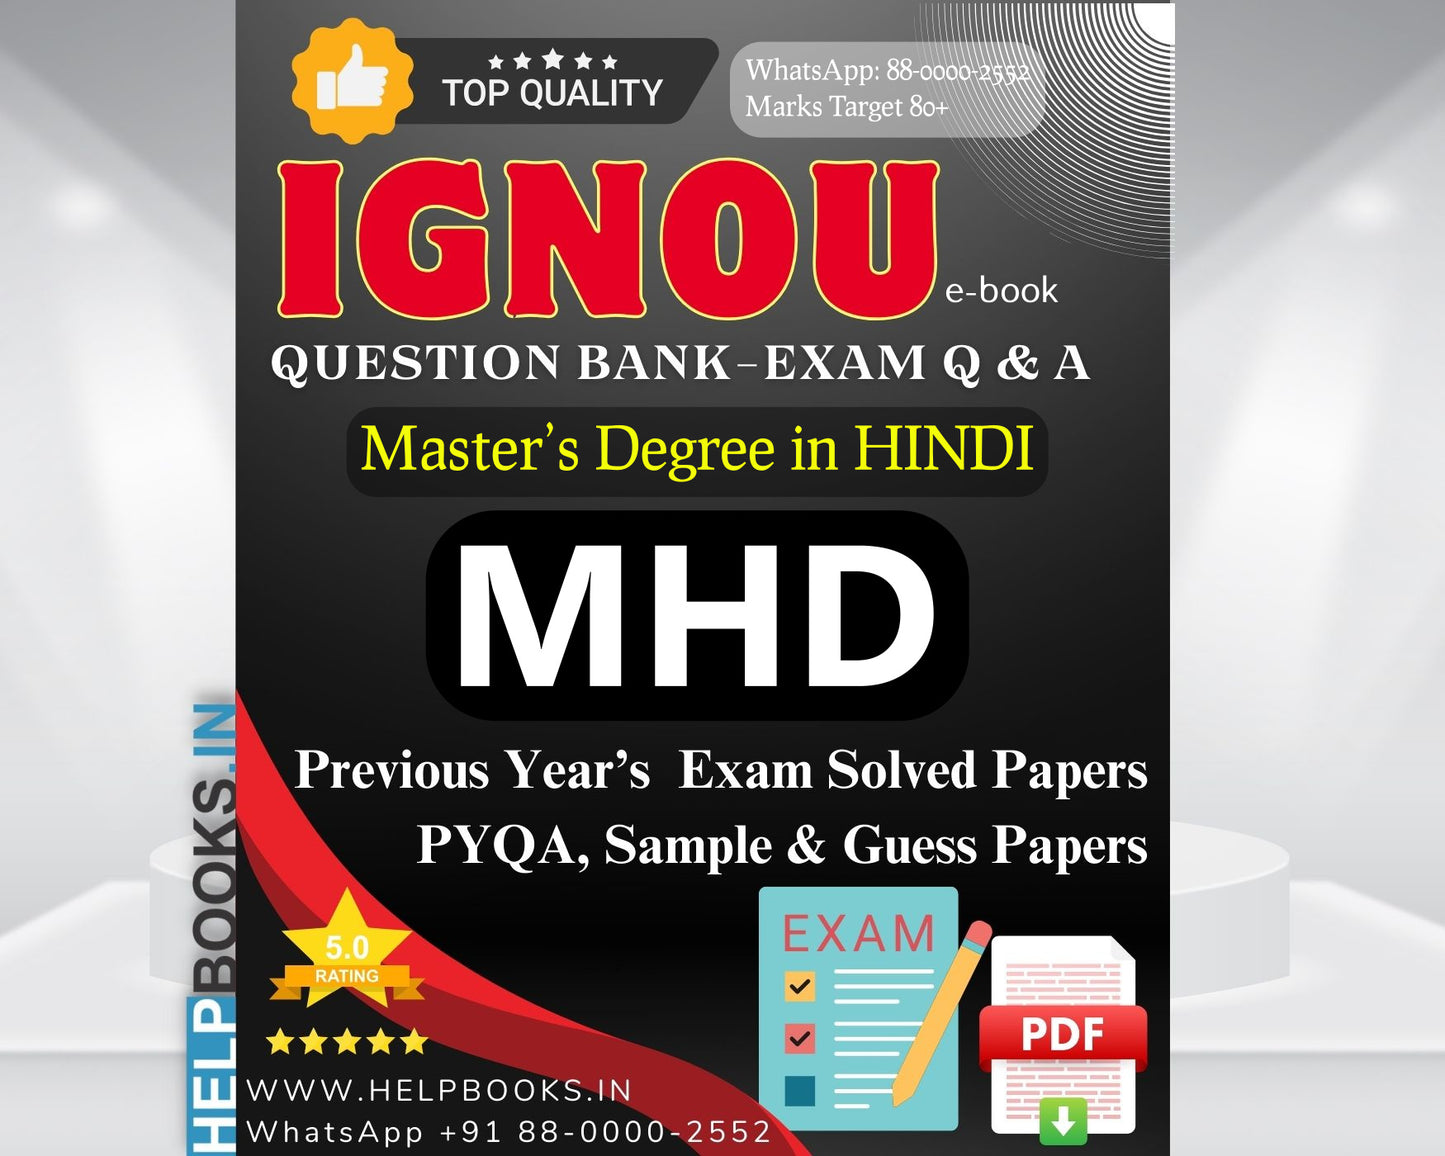 IGNOU MHD (Master of Arts Hindi) 5 Sample Solved Sample Papers & 5 Guess Papers for Master of Arts Hindi